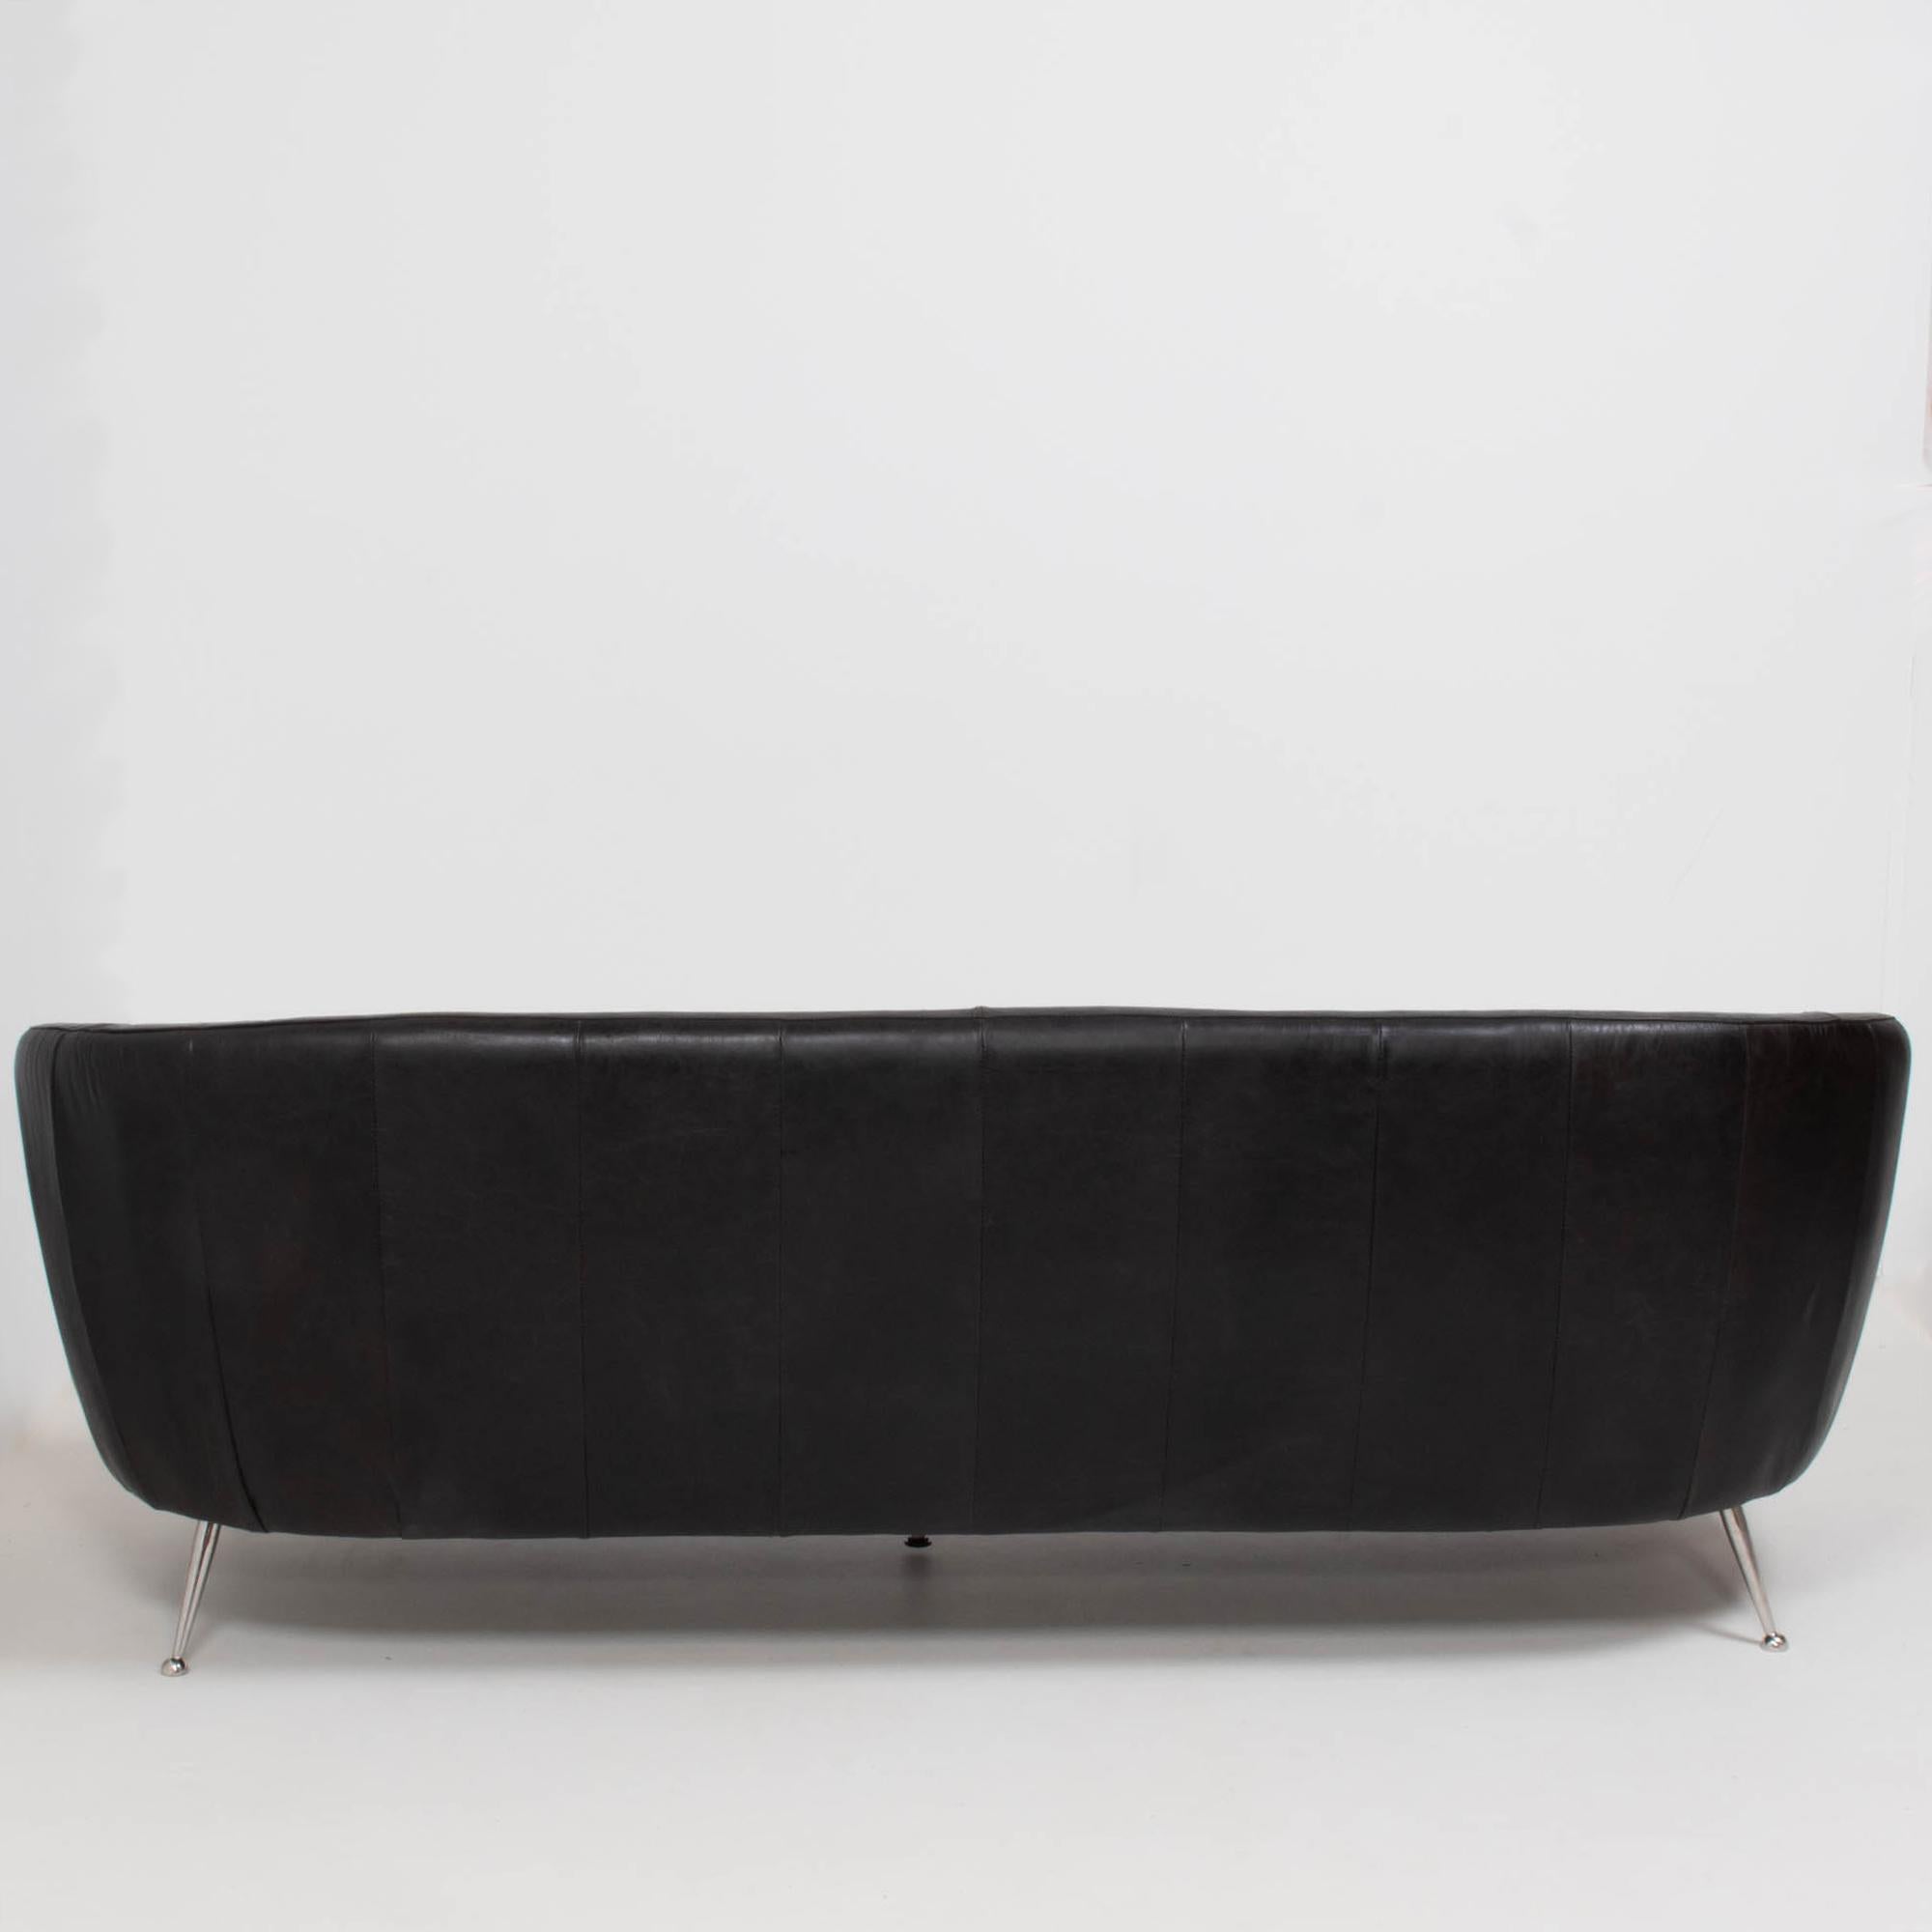 Italienisches geschwungenes dreisitziges Vintage-Sofa aus Leder, 1960er Jahre (20. Jahrhundert)